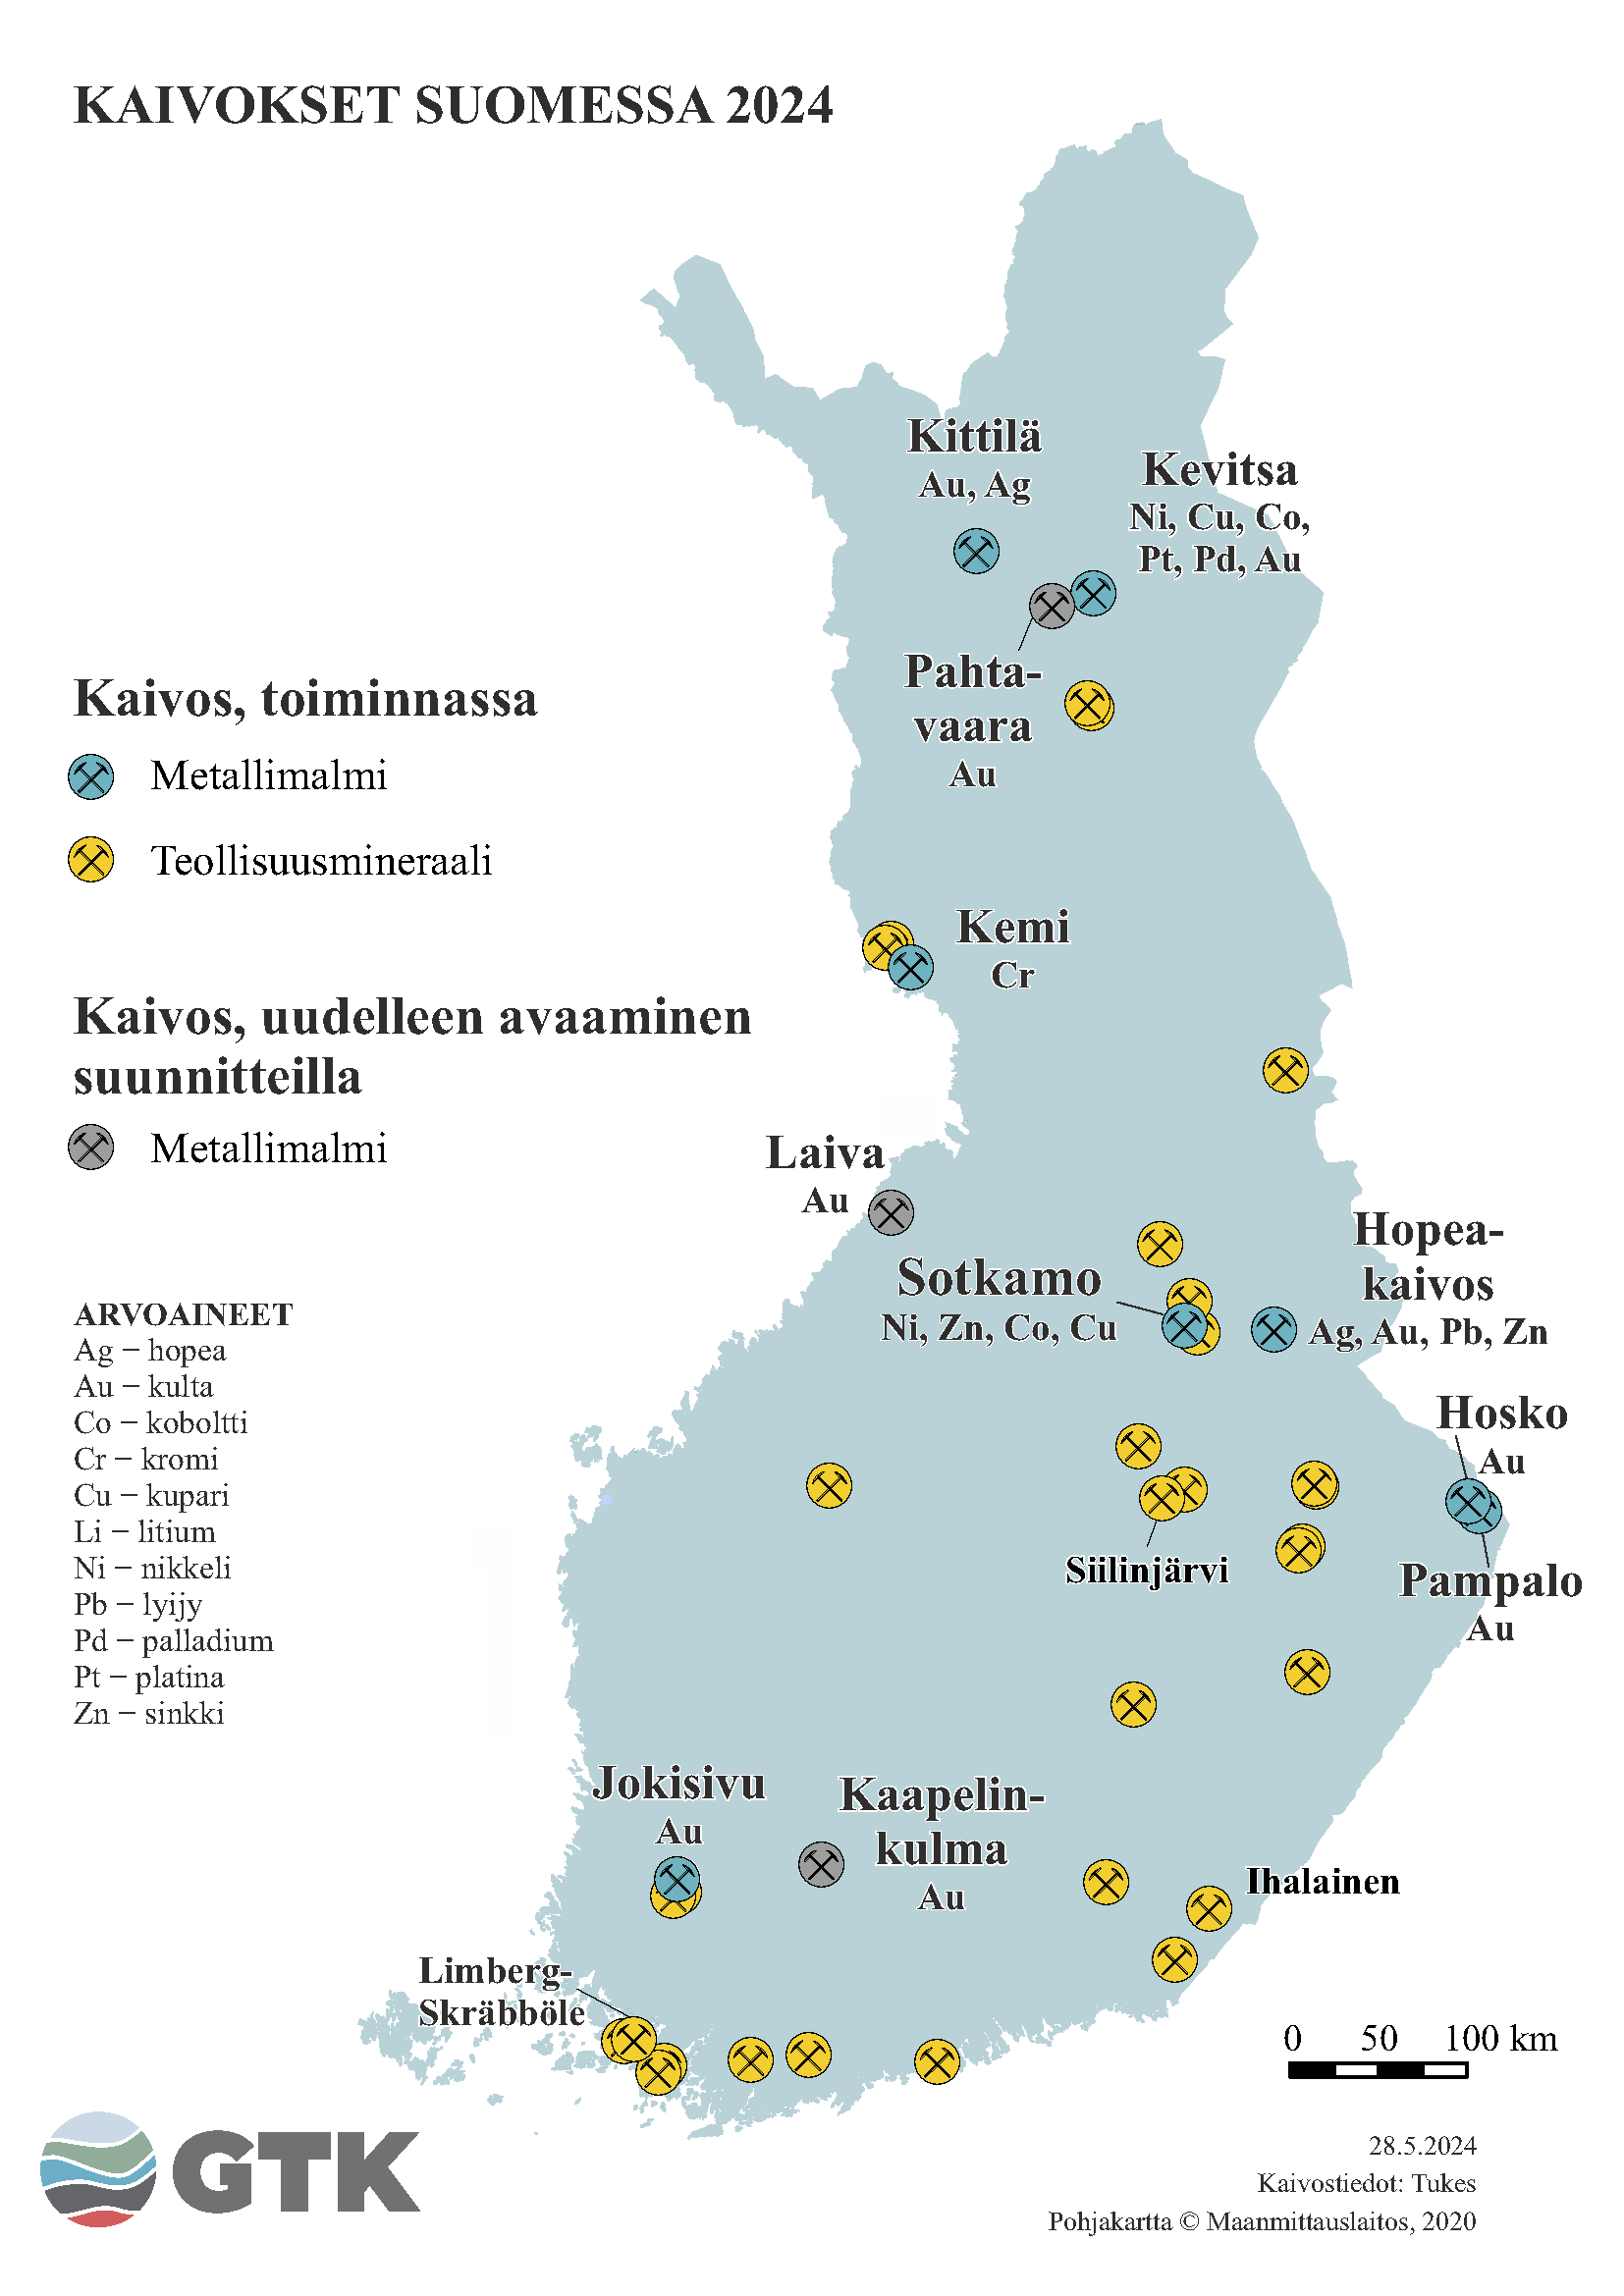 Suomen kartta, johon on merkattu kaivokset Suomessa vuonna 2024